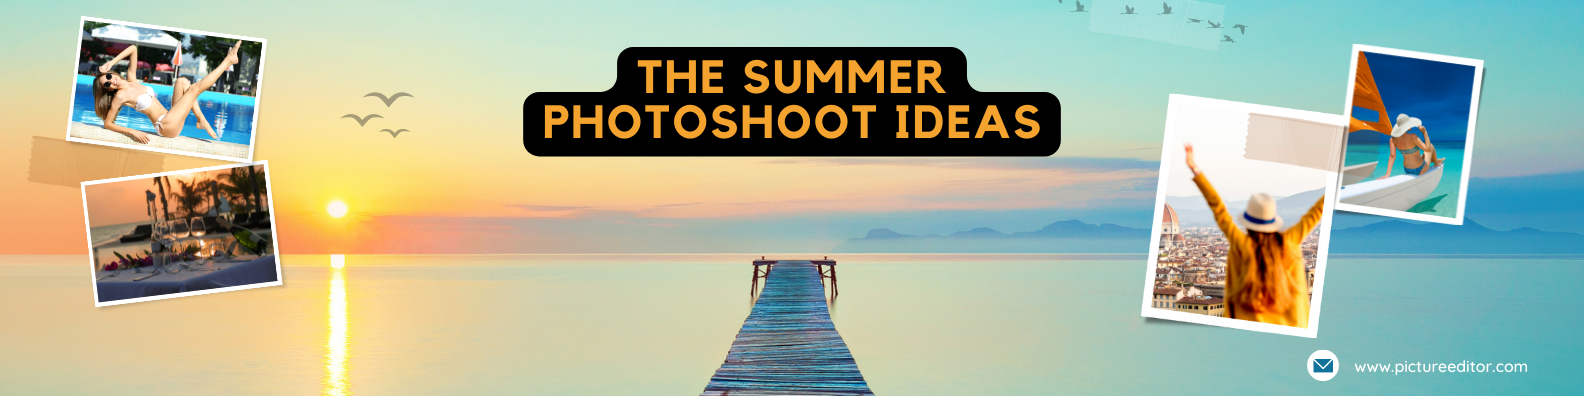 The Summer Photoshoot Idea